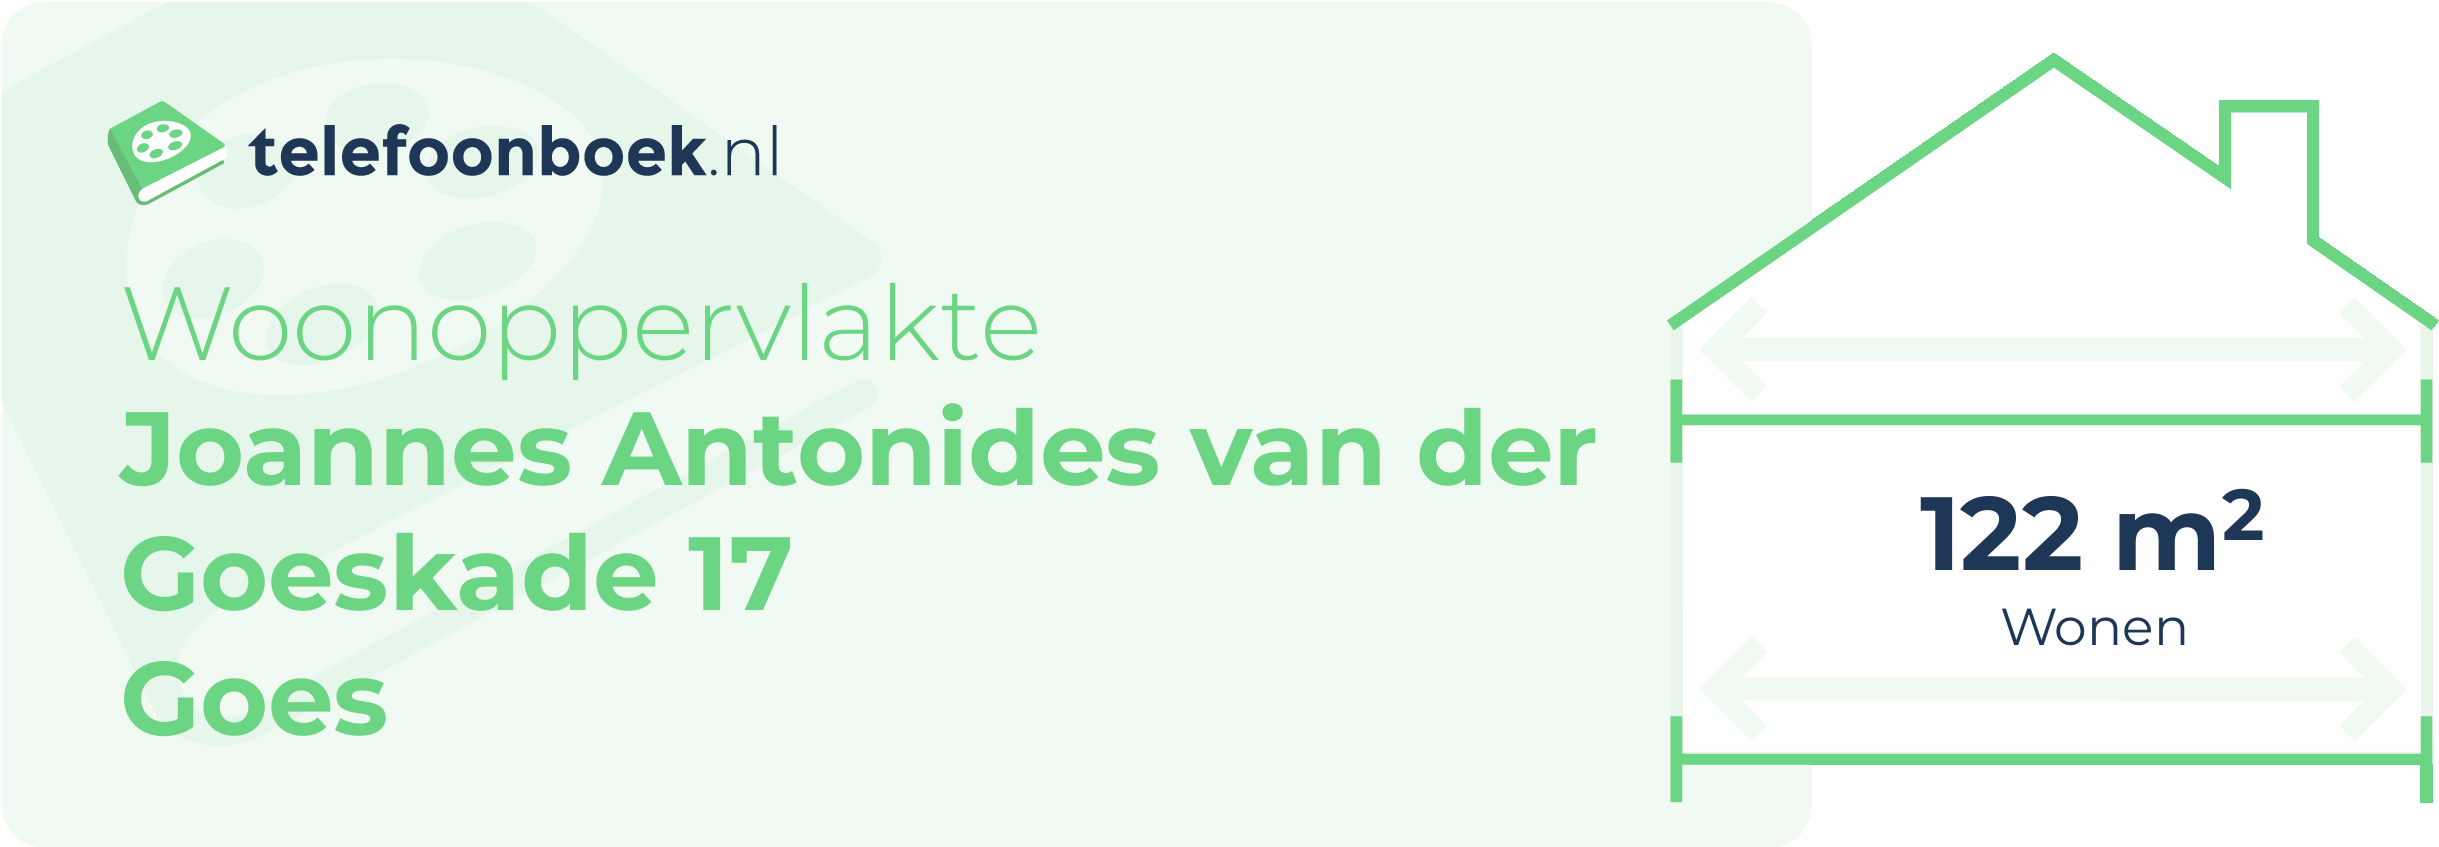 Woonoppervlakte Joannes Antonides Van Der Goeskade 17 Goes